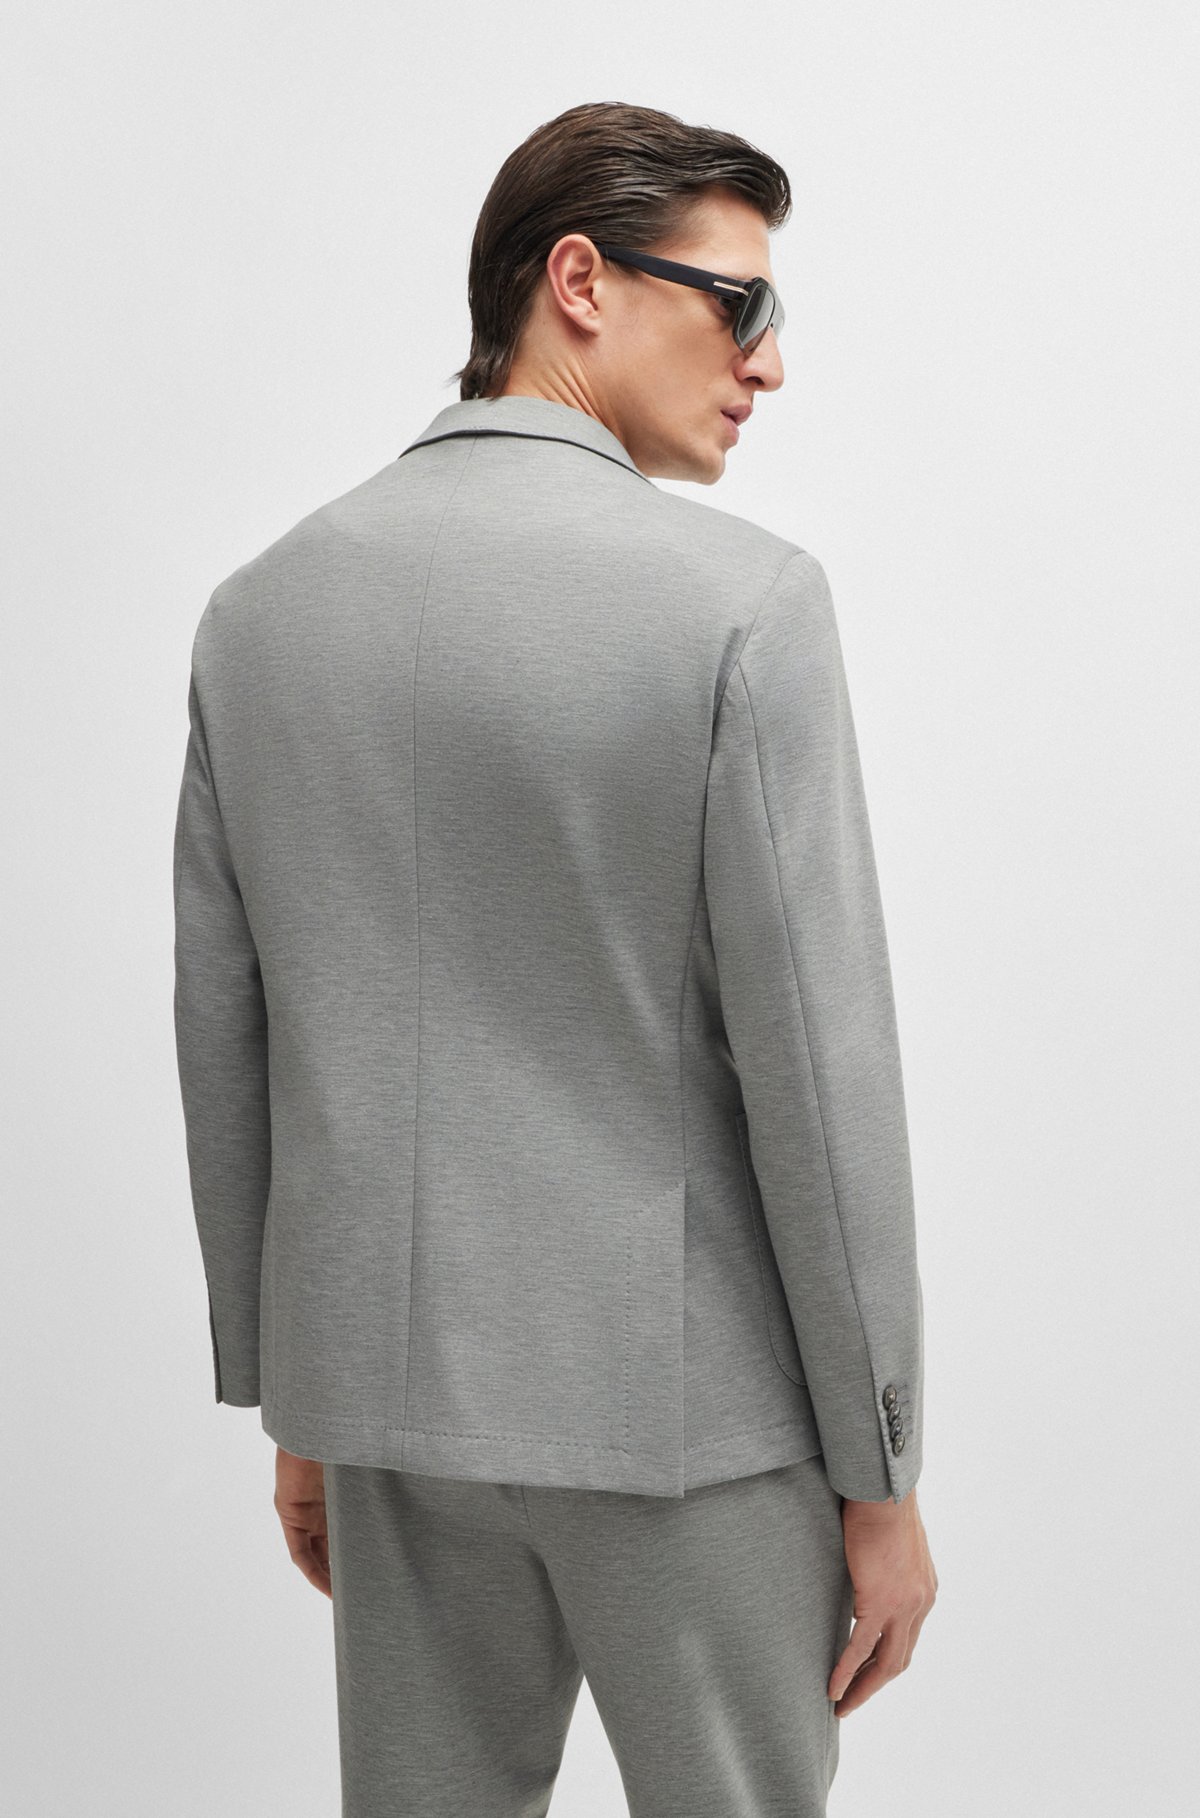 Slim-fit jacket in melange interlock jersey, Silver